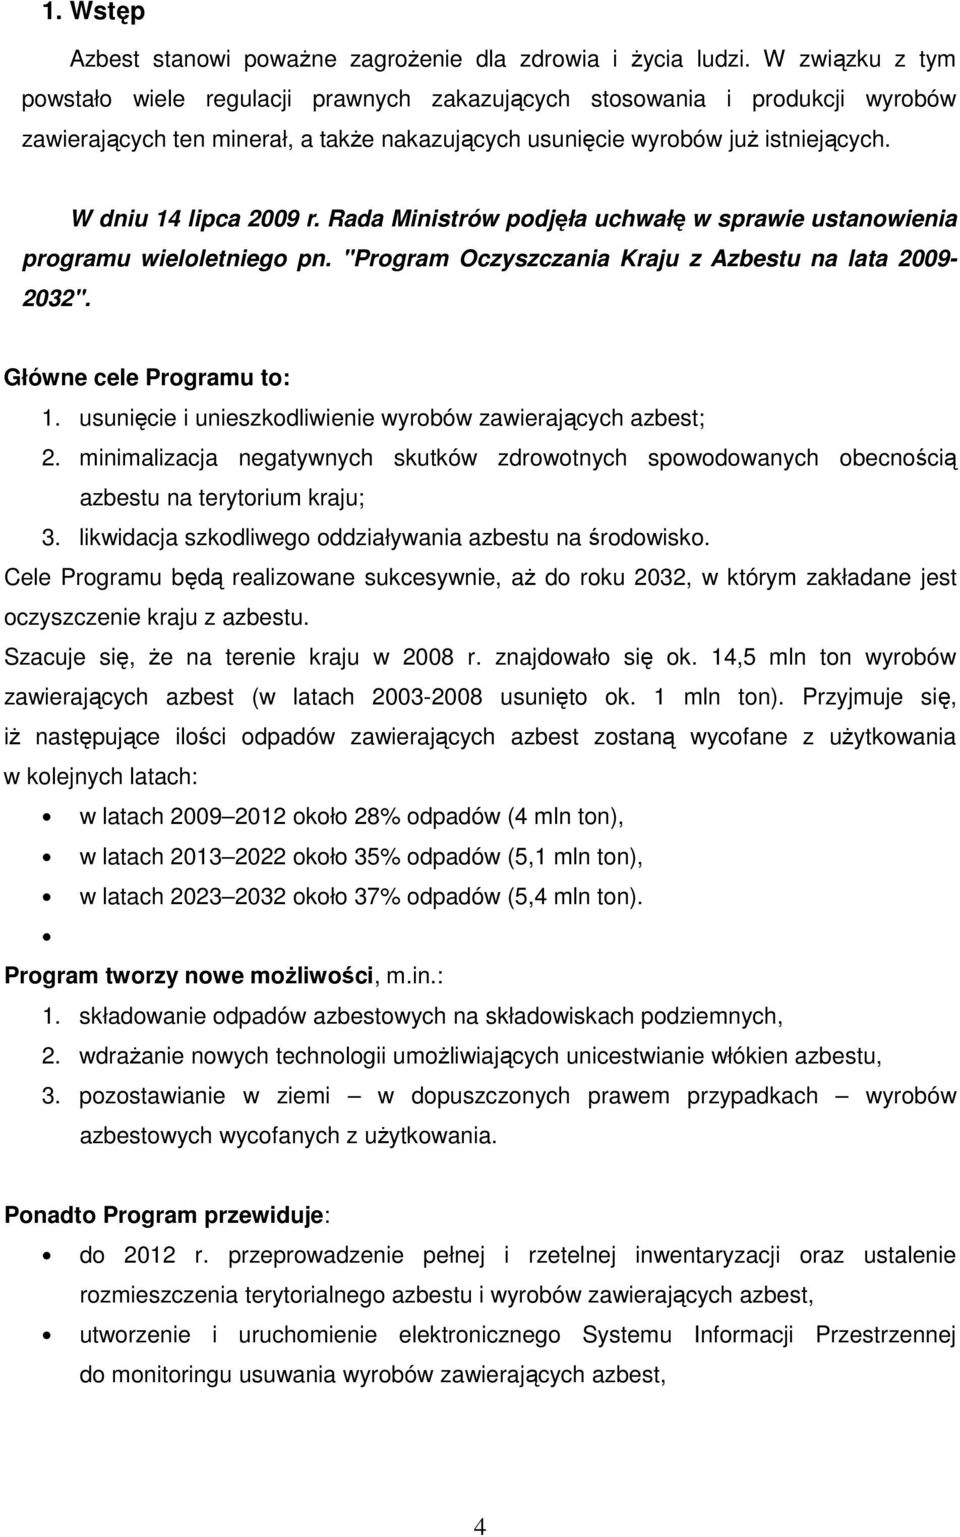 W dniu 14 lipca 2009 r. Rada Ministrów podjęła uchwałę w sprawie ustanowienia programu wieloletniego pn. "Program Oczyszczania Kraju z Azbestu na lata 2009-2032". Główne cele Programu to: 1.